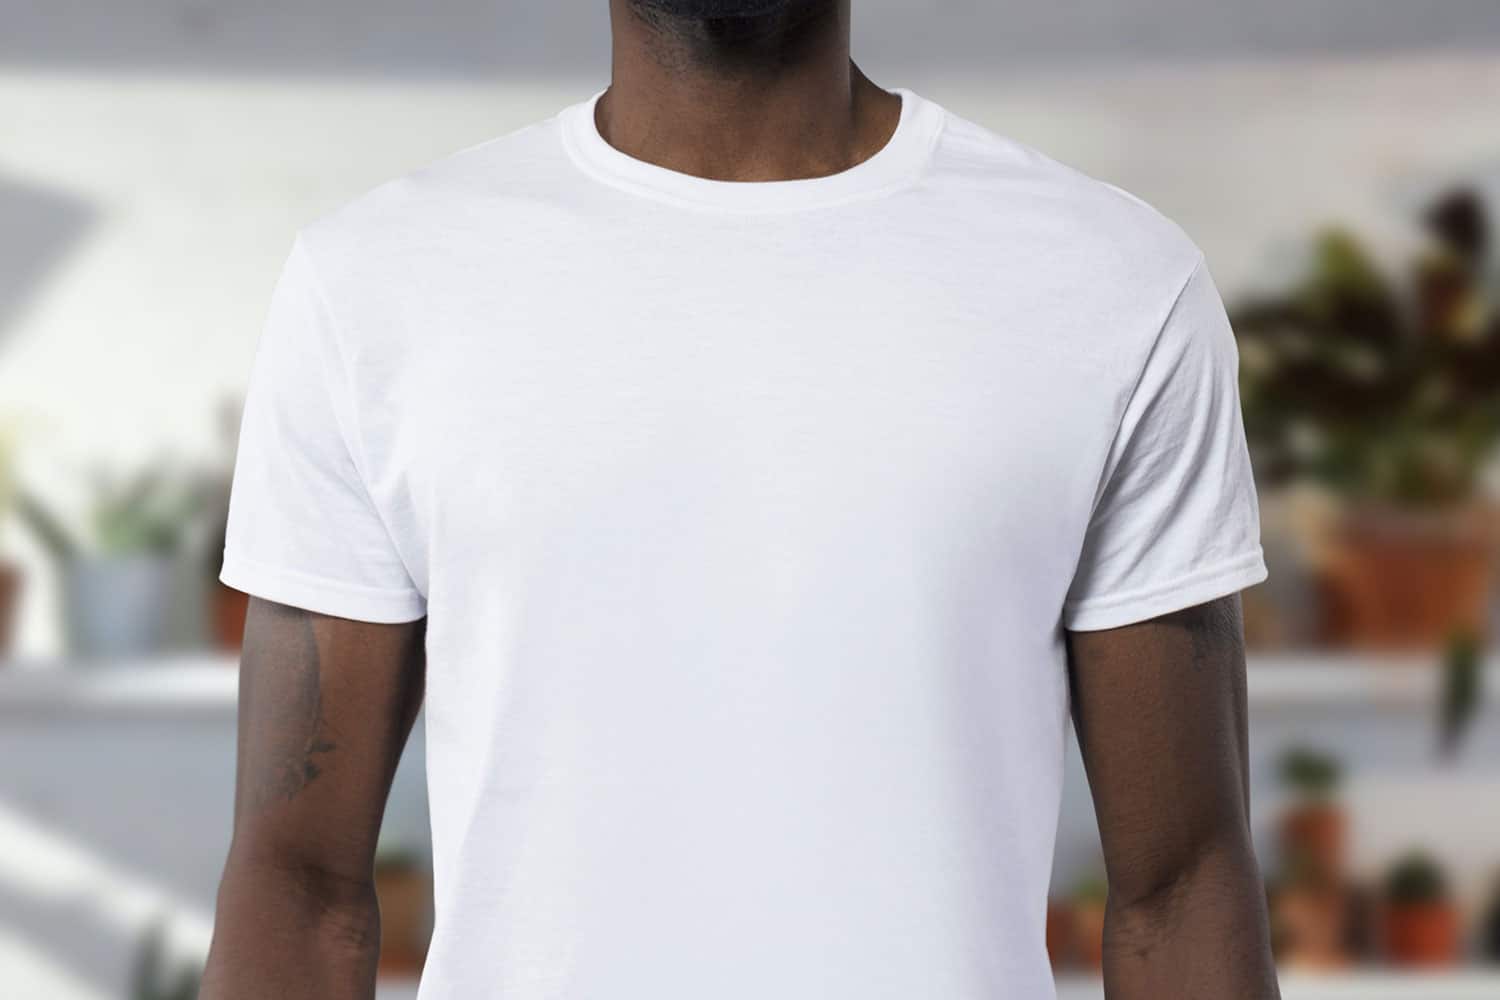 man wearing white undershirt